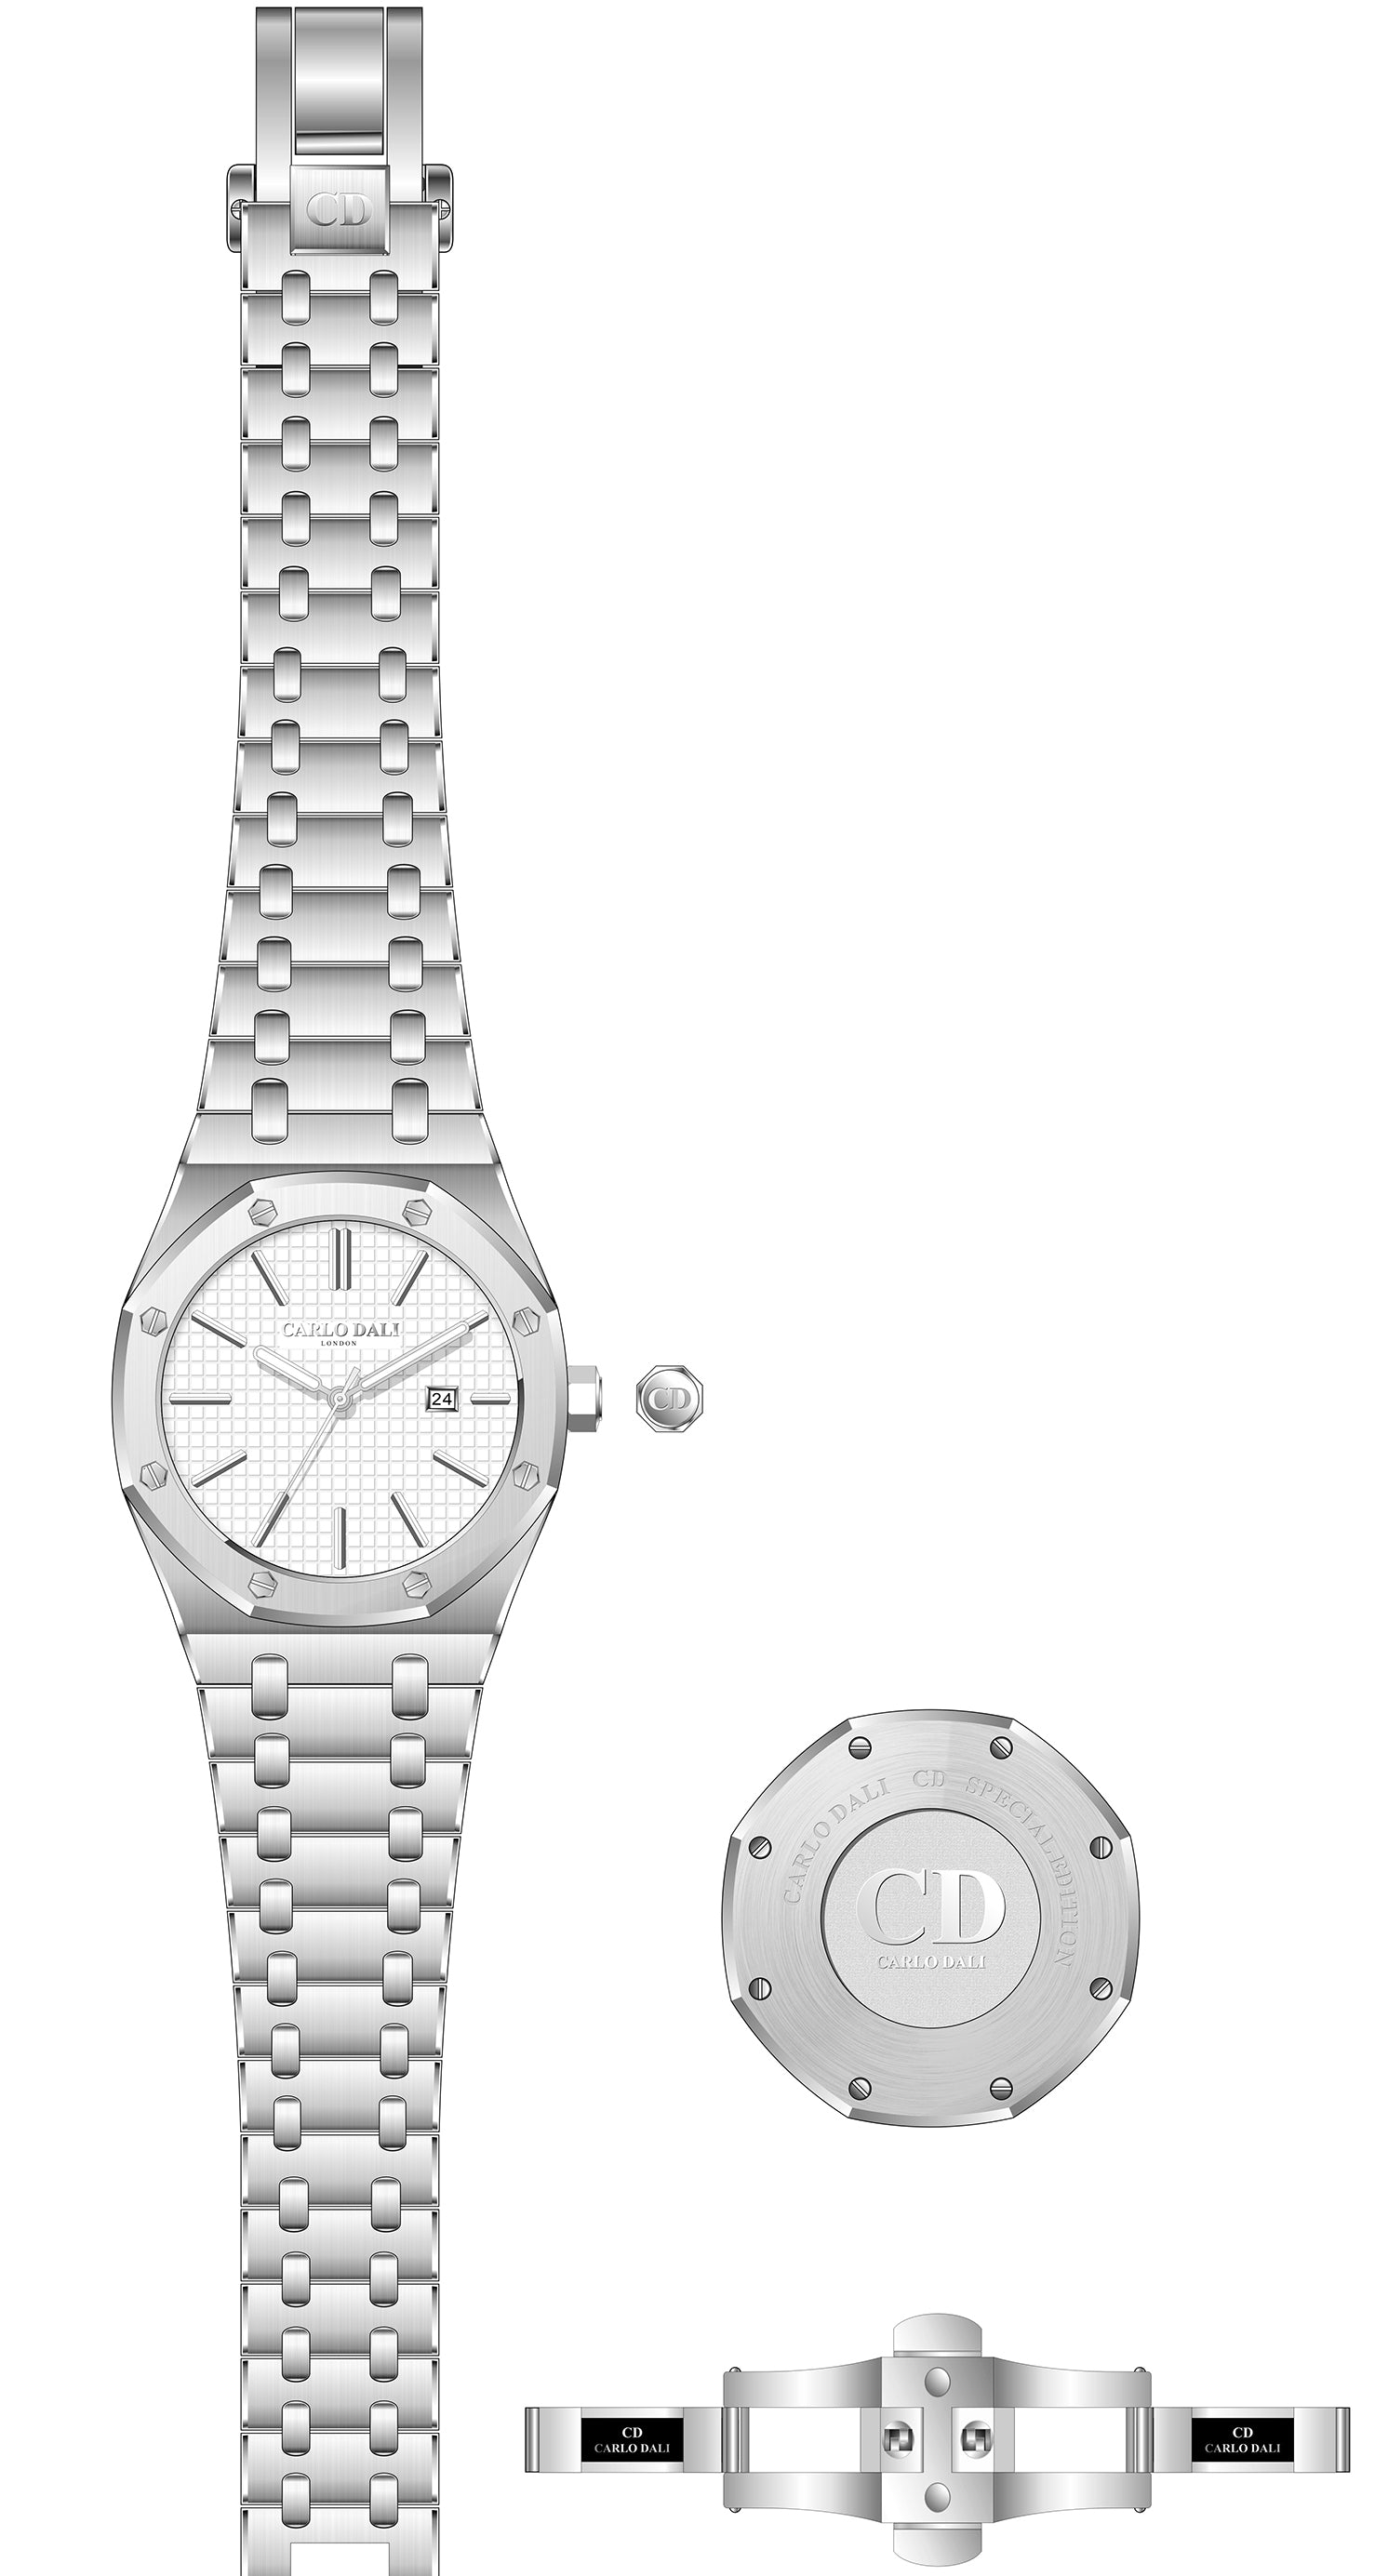 Royal Geometric White watch